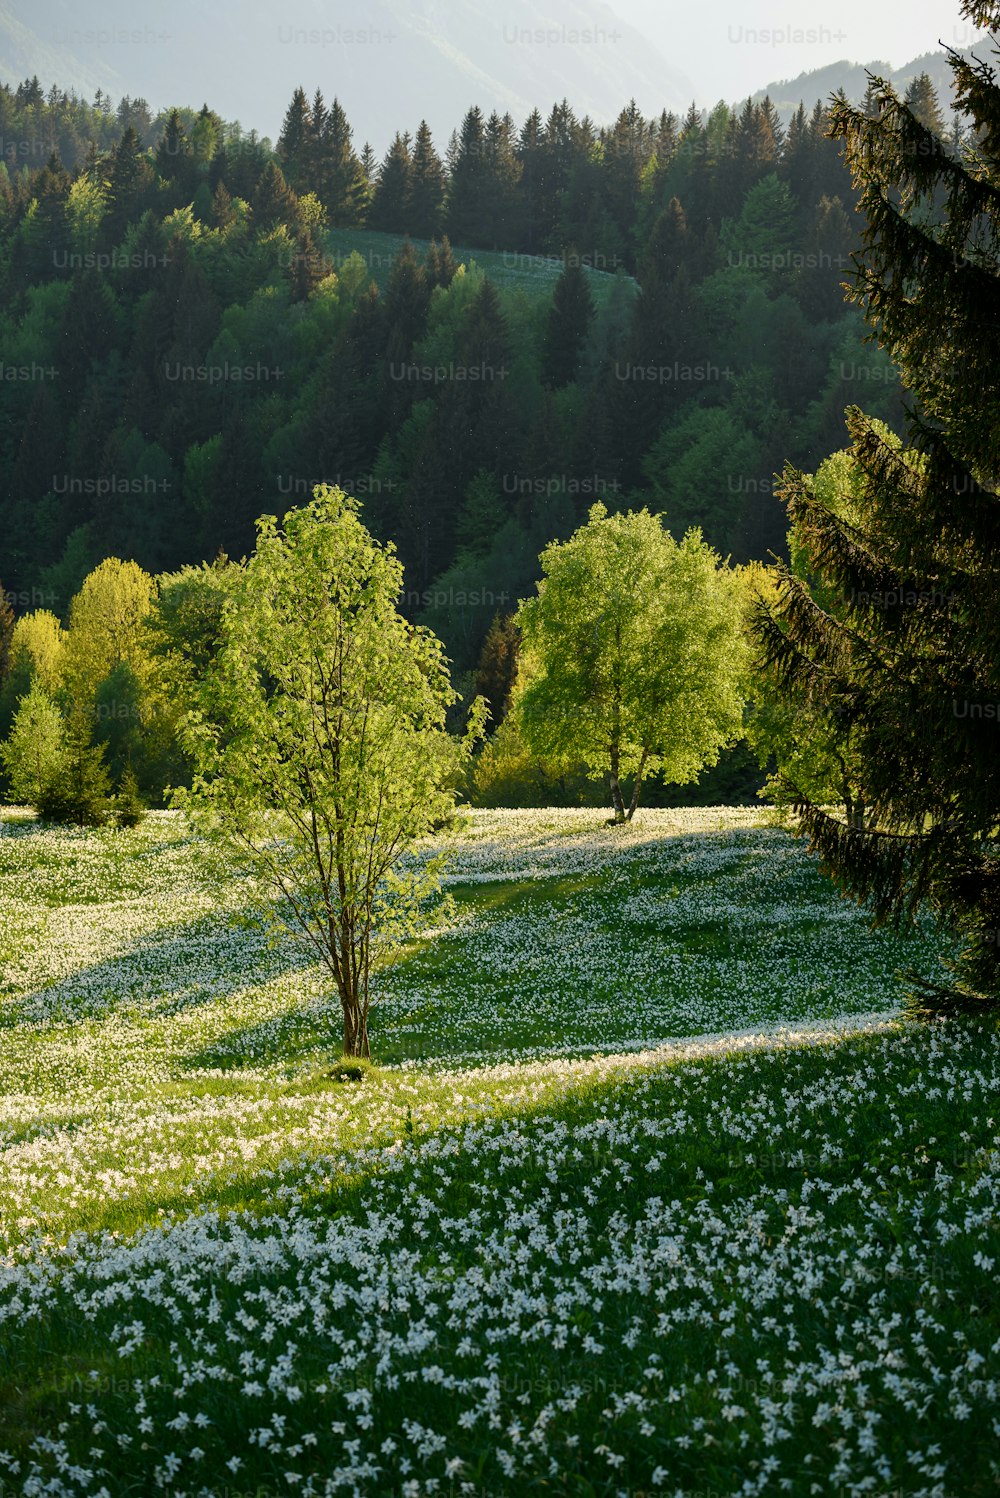 Un campo verde con flores blancas y árboles